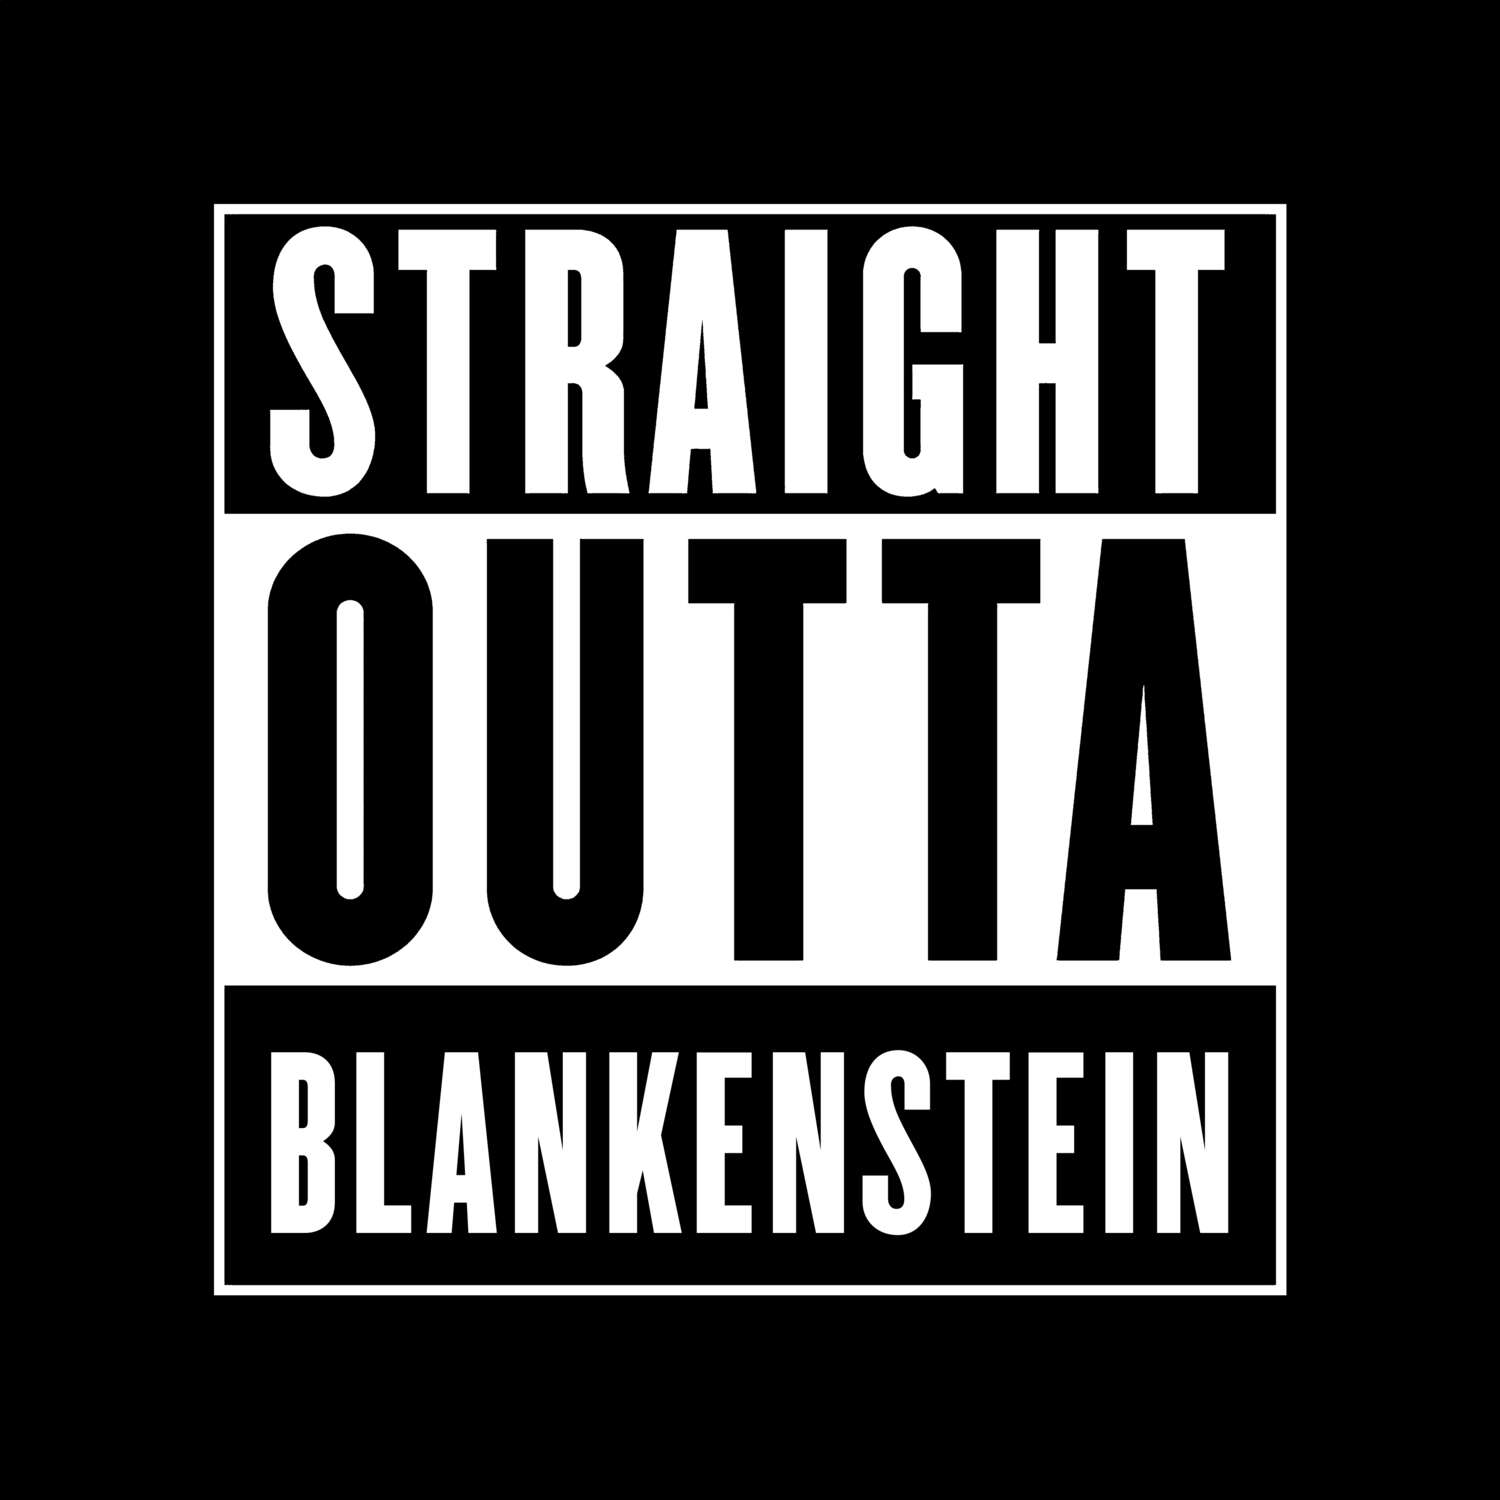 Blankenstein T-Shirt »Straight Outta«